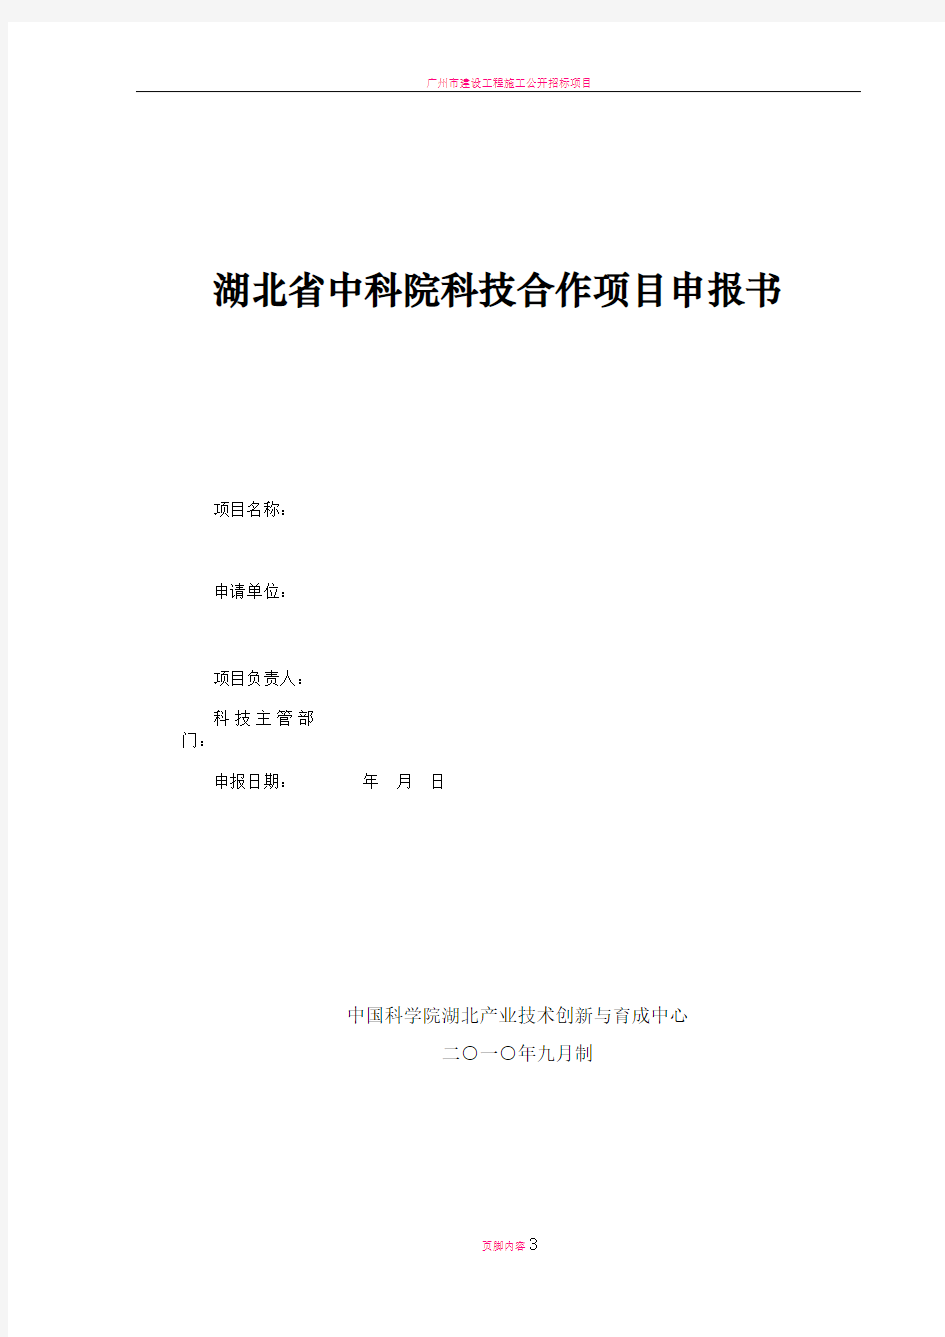 广州科技计划项目申请书